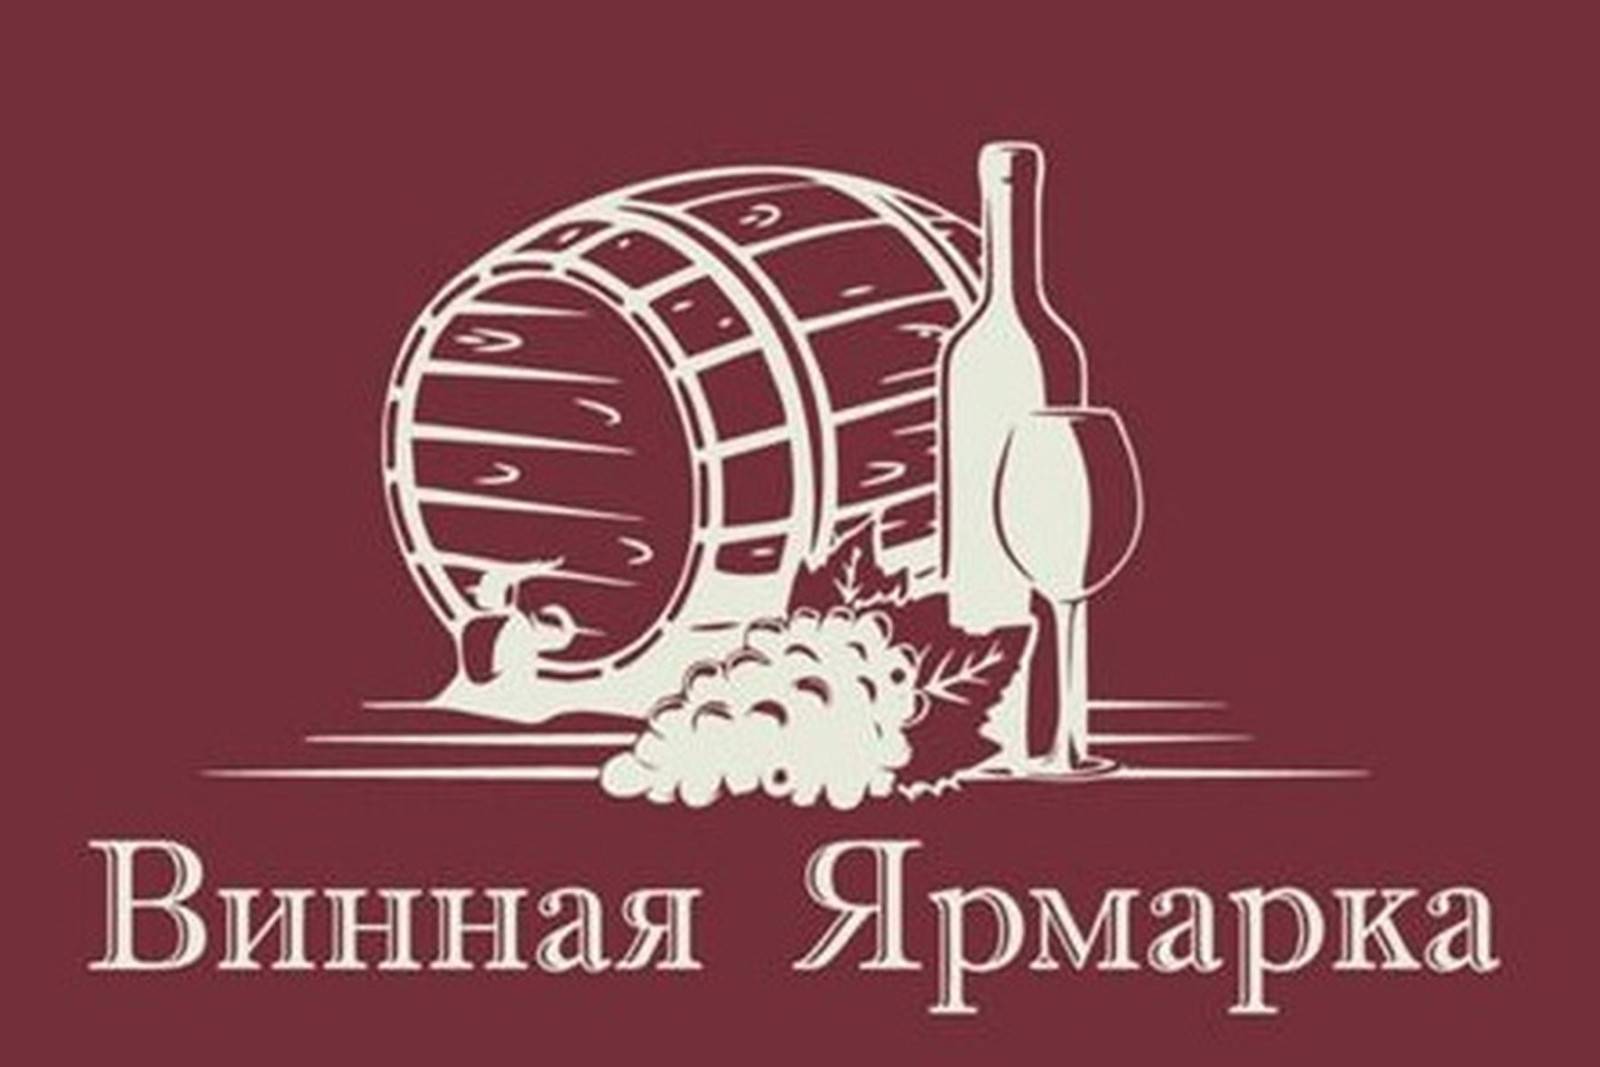 В Ростове на набережной почти две недели будет проходить всероссийская винная ярмарка